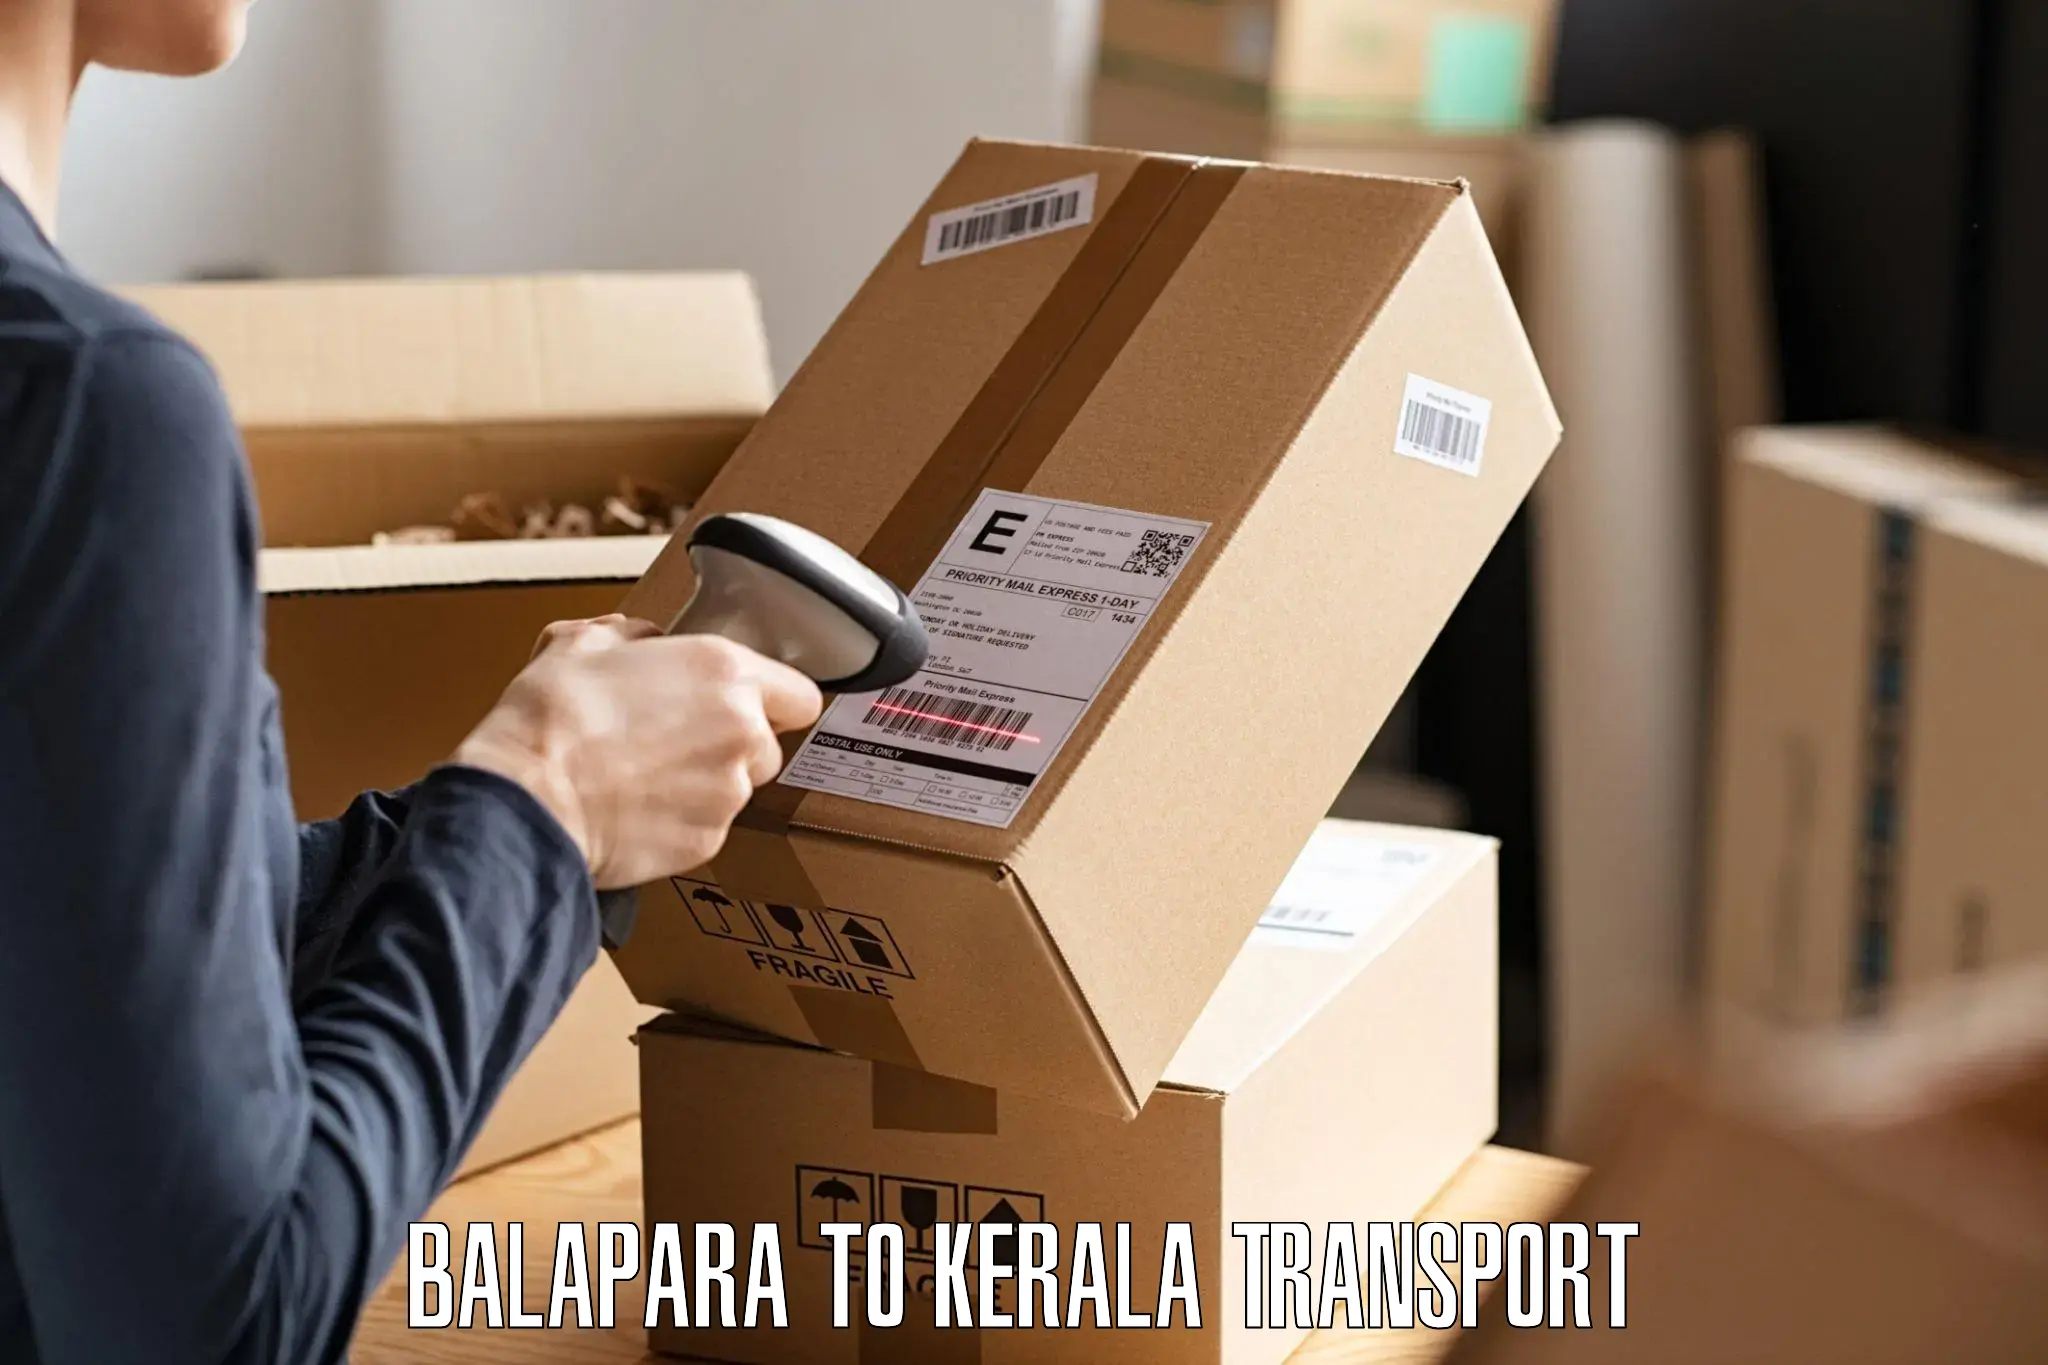 Furniture transport service Balapara to Haripad